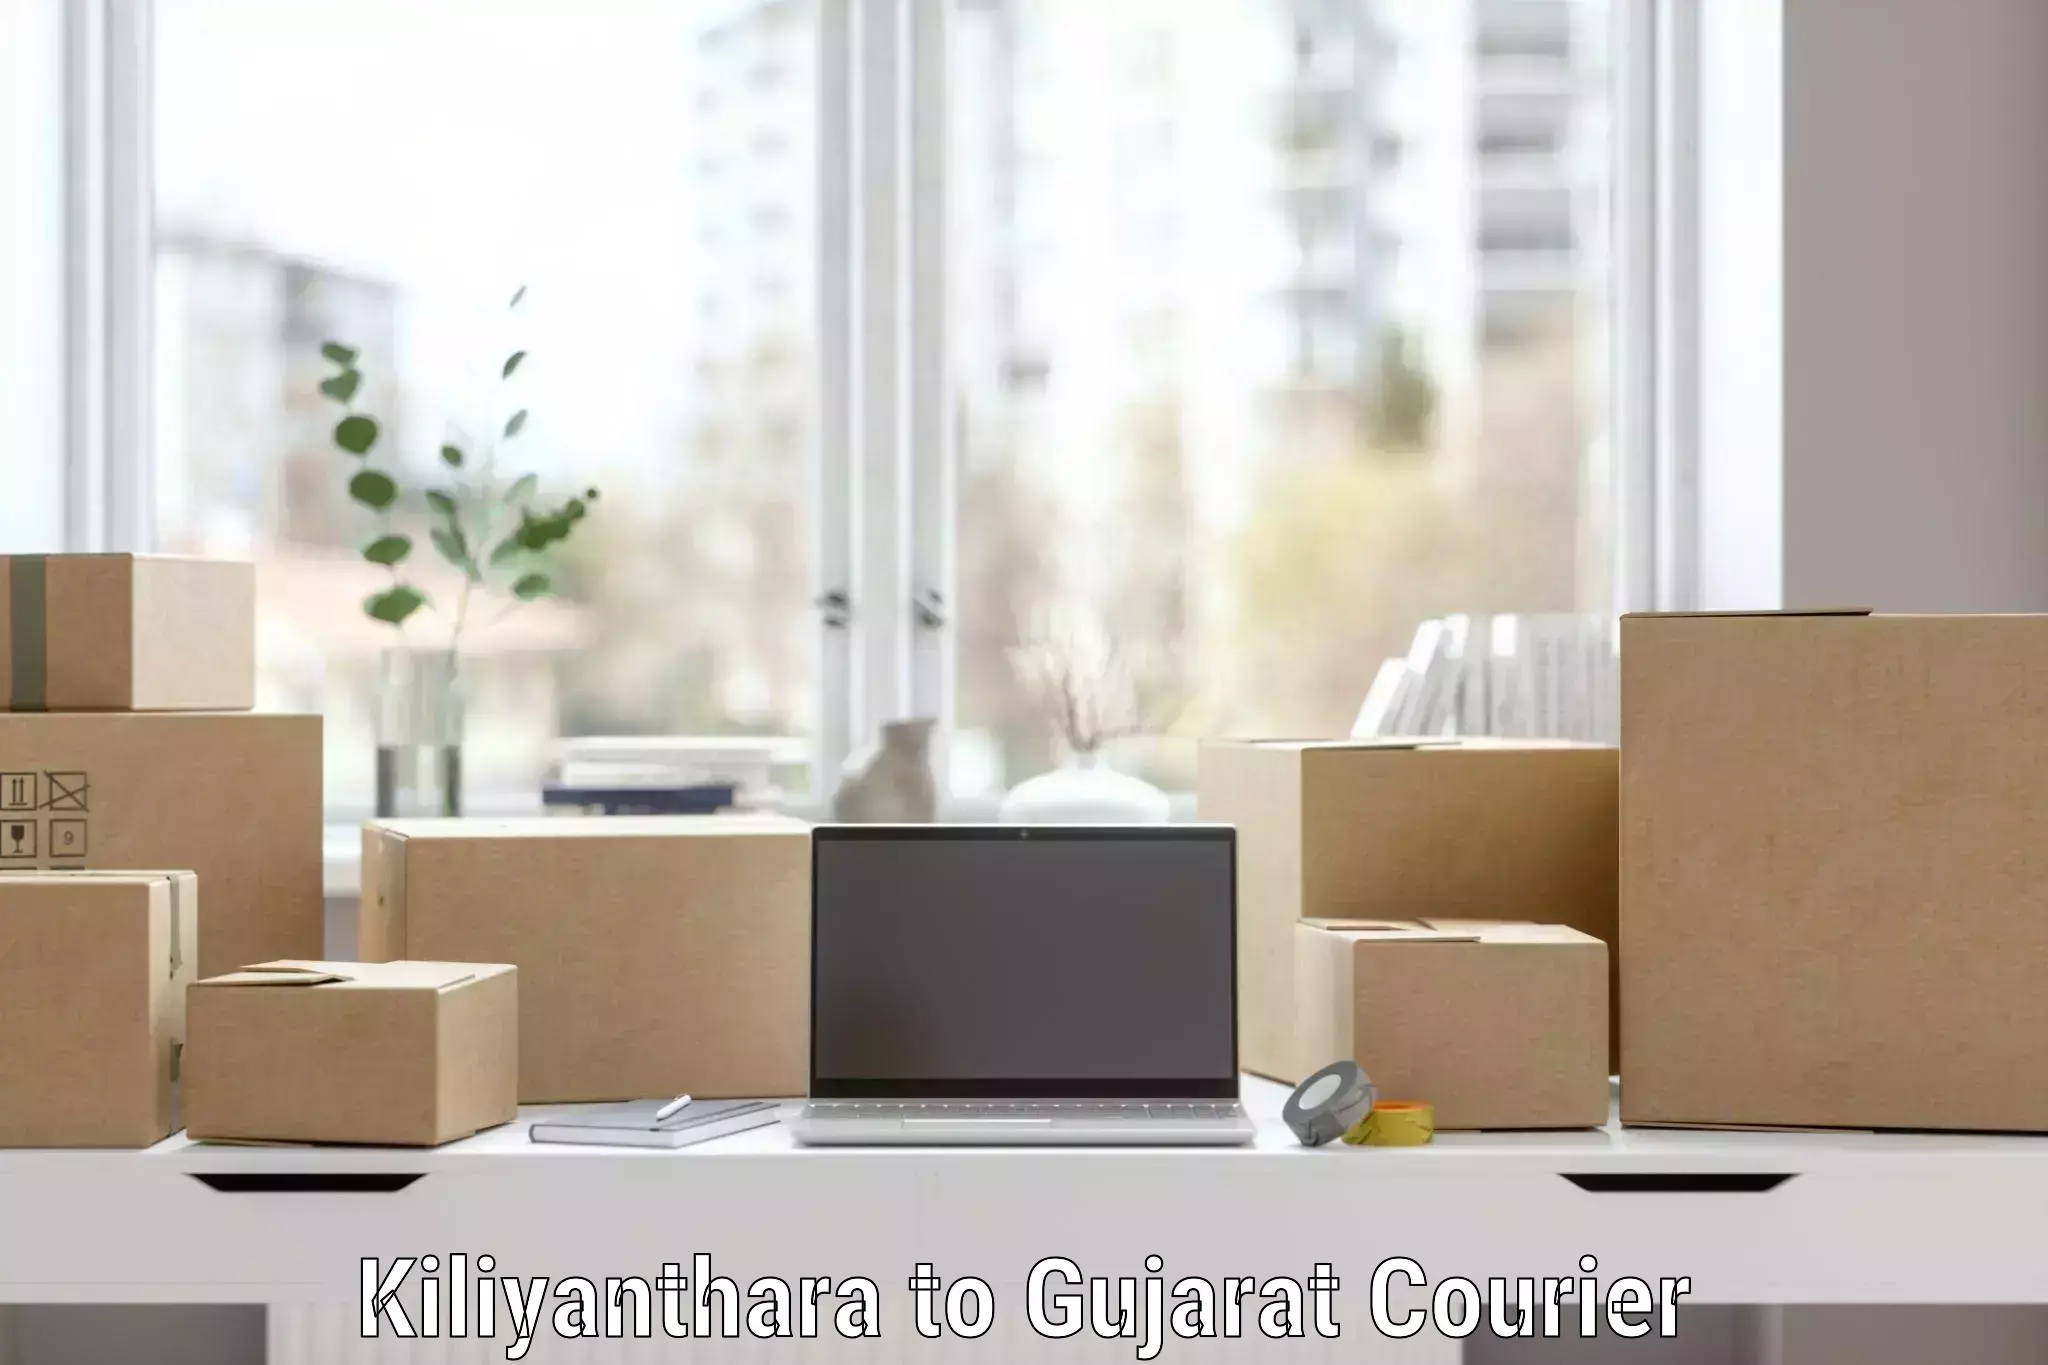 Skilled furniture movers Kiliyanthara to Gujarat